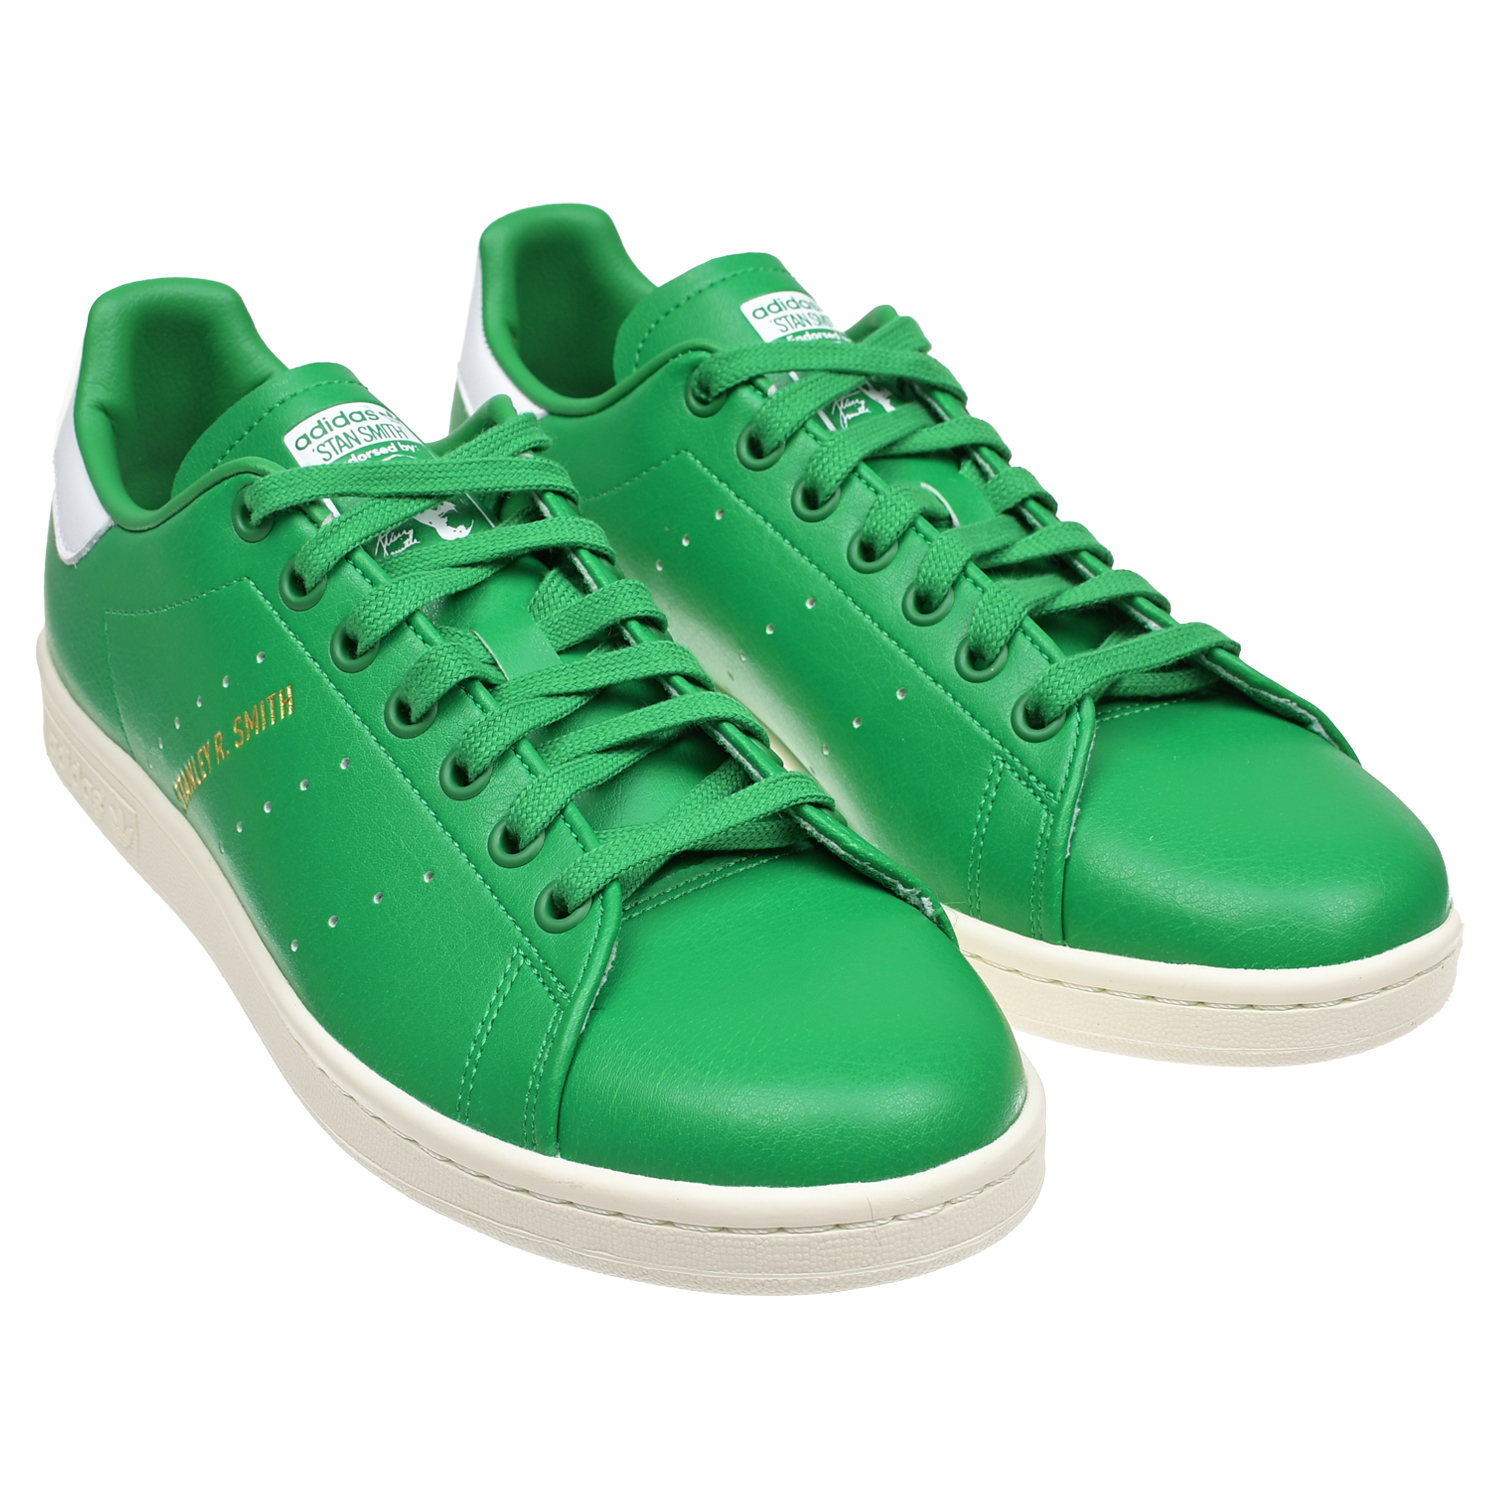 Кроссовки с зеленой подошвой. Adidas Stan Smith зеленые. Adidas кеды зеленые 2022. Кроссовки Stan Smith adidas зеленая коробка зеленая. Кроссовки Stan Smith adidas зеленая коробка.